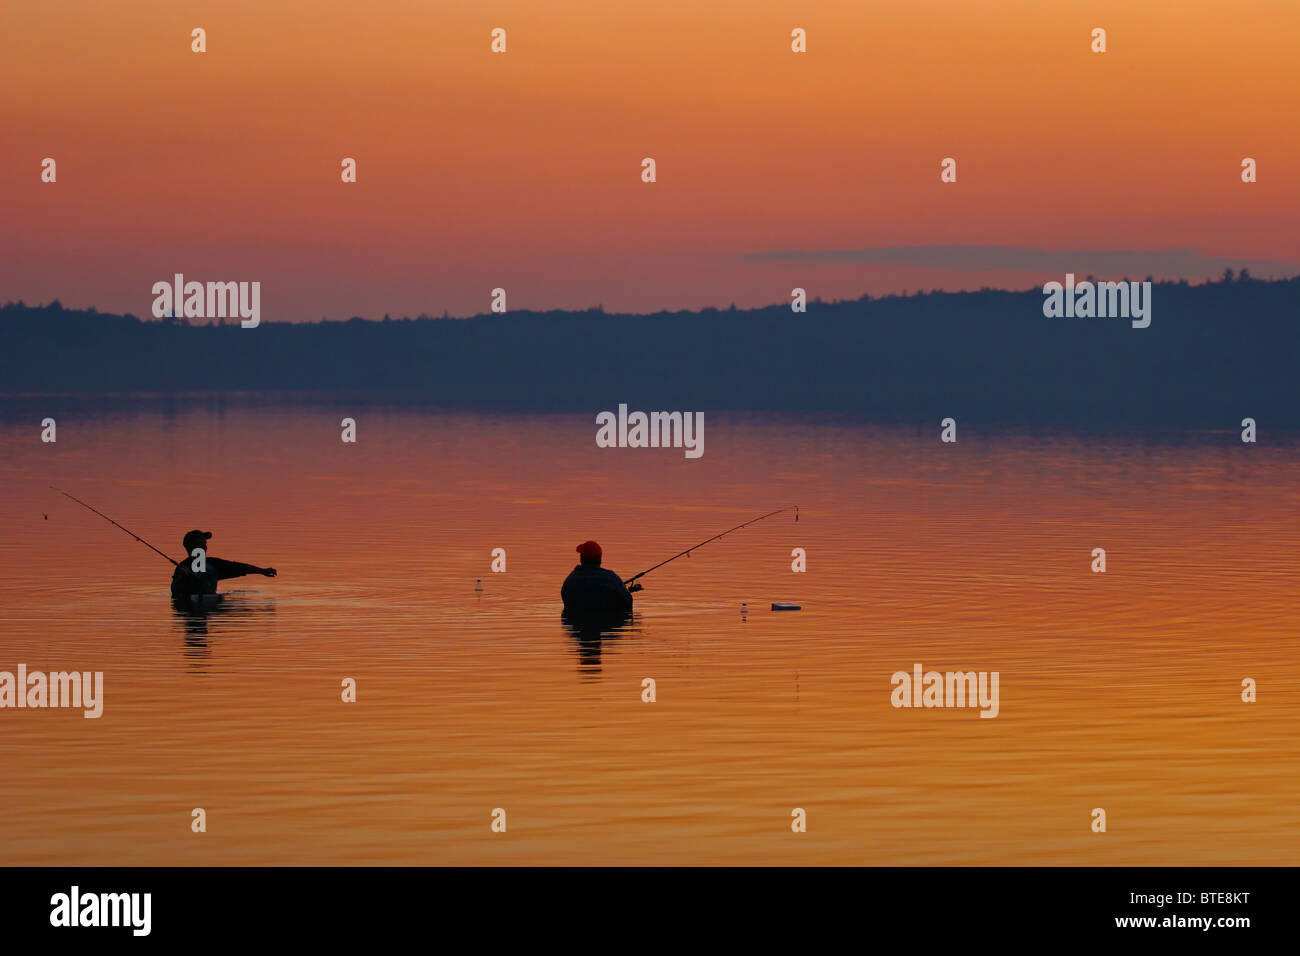 Lago di cipro immagini e fotografie stock ad alta risoluzione - Alamy